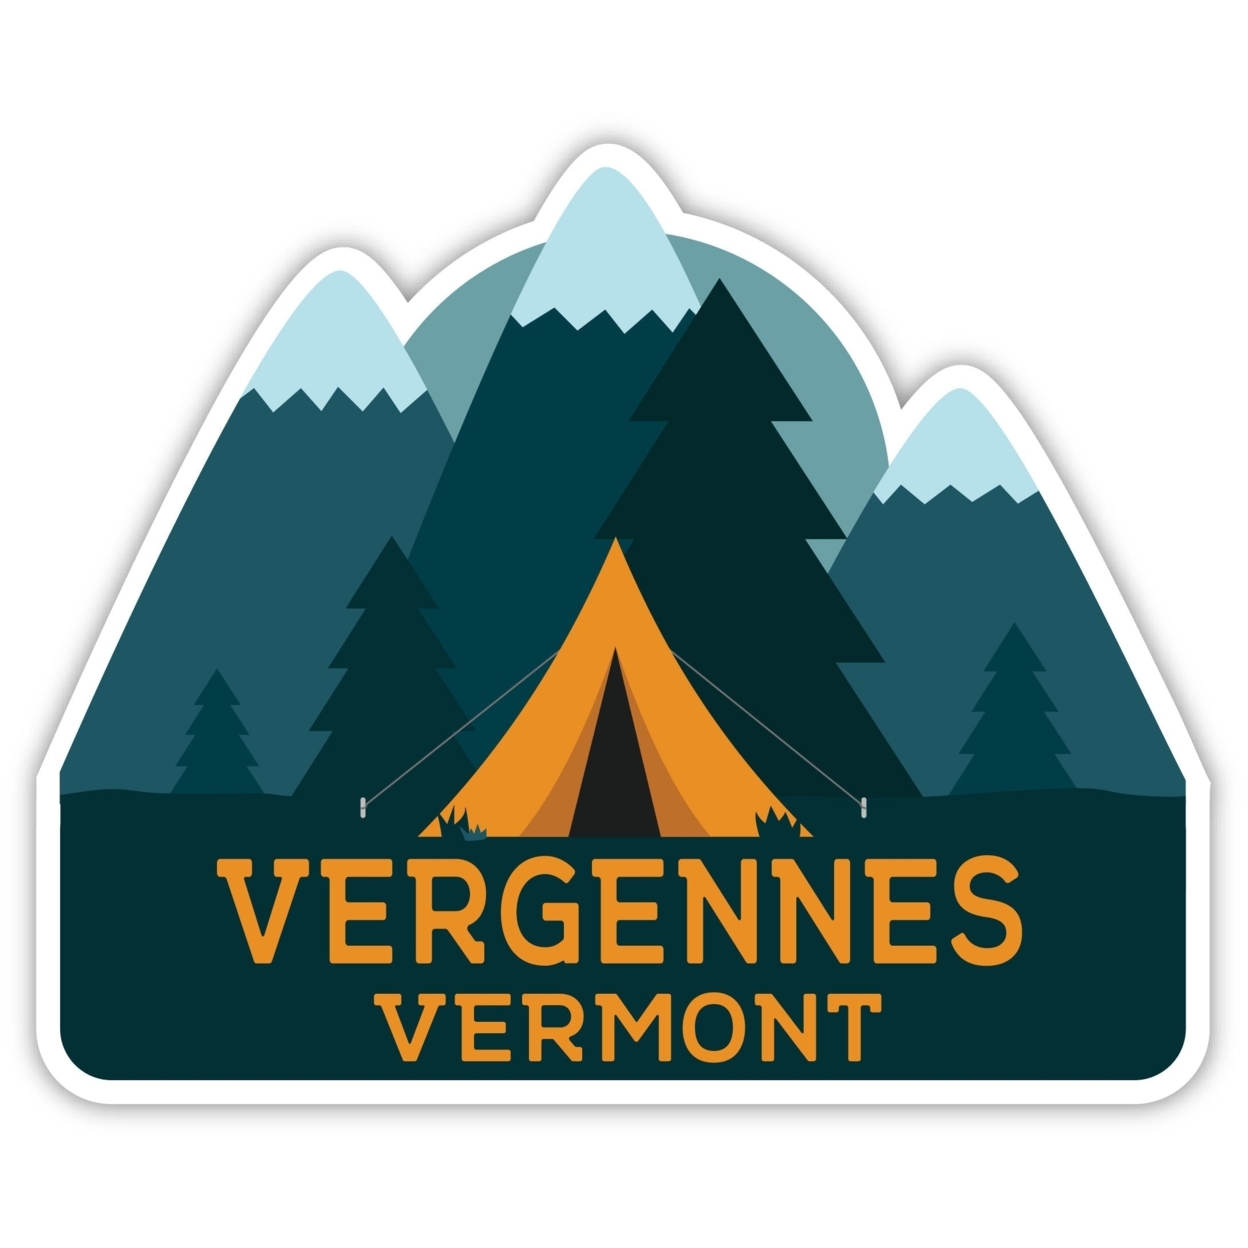 Vergennes Vermont Souvenir Decorative Stickers (Choose Theme And Size) - Single Unit, 4-Inch, Tent